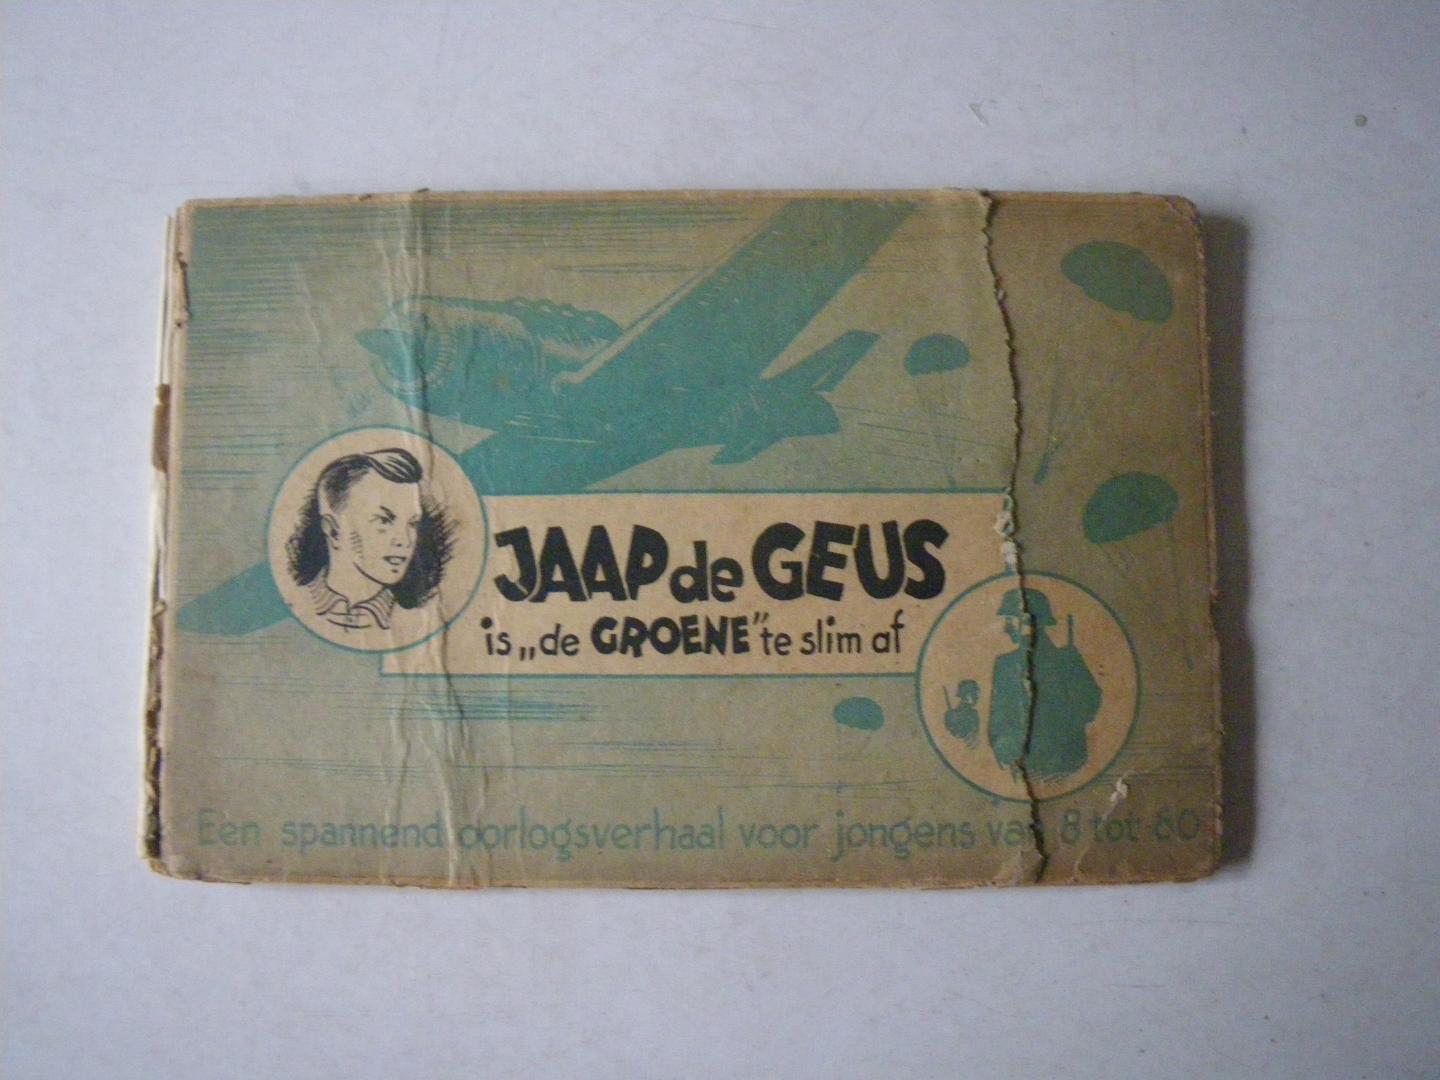 Meijer, Cor - Jaap de Geus is "de Groene" te slim af (Een spannend oorlogsverhaal voor jongens van 8 tot 80)